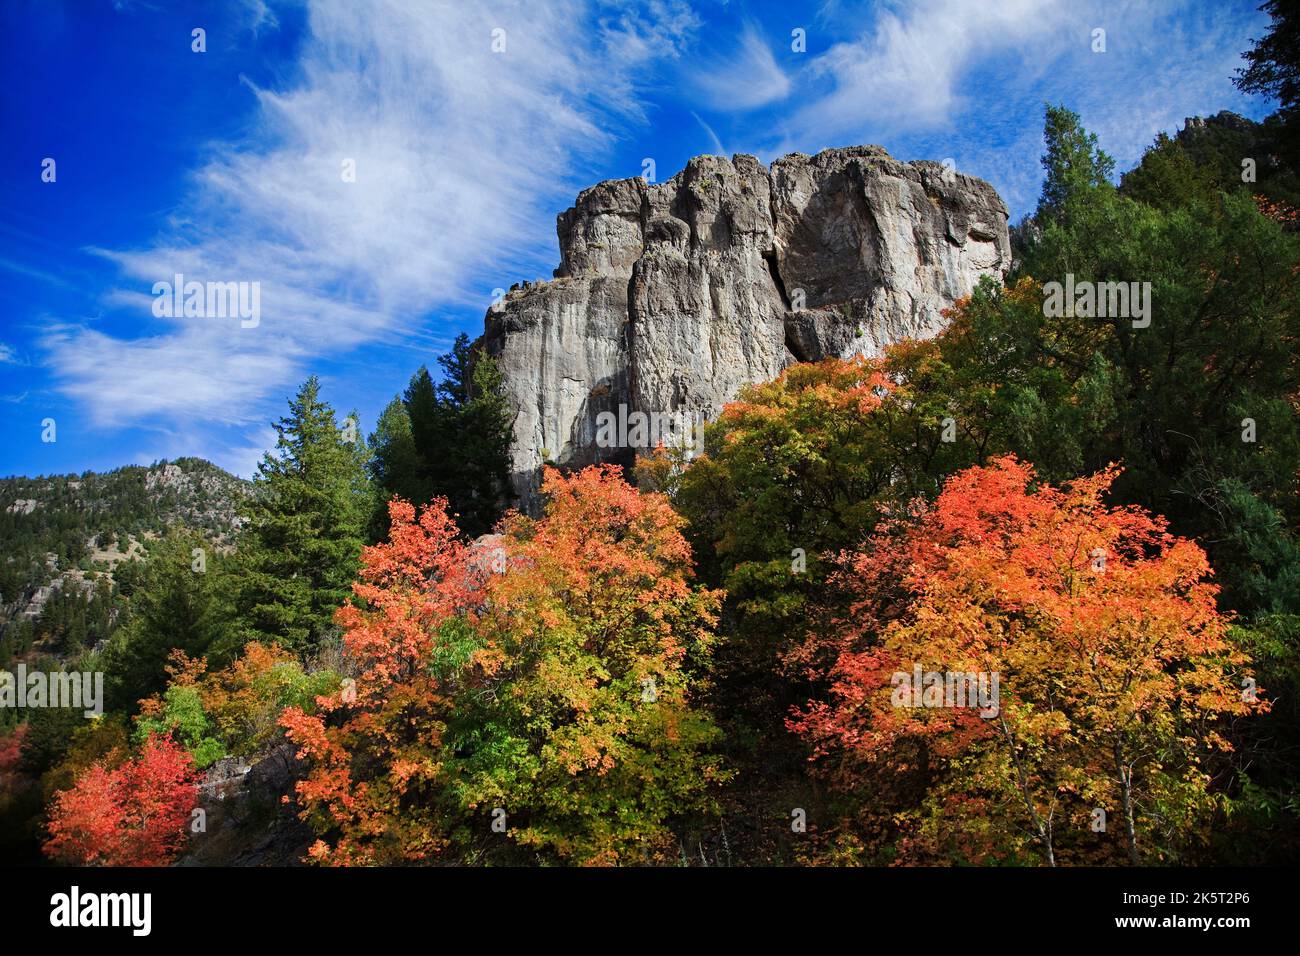 Dies ist ein Blick auf die Herbstfarben entlang der Logan Canyon Scenic Byway in Logan Canyon, nordöstlich von Logan, Cache County, Utah, USA. Stockfoto